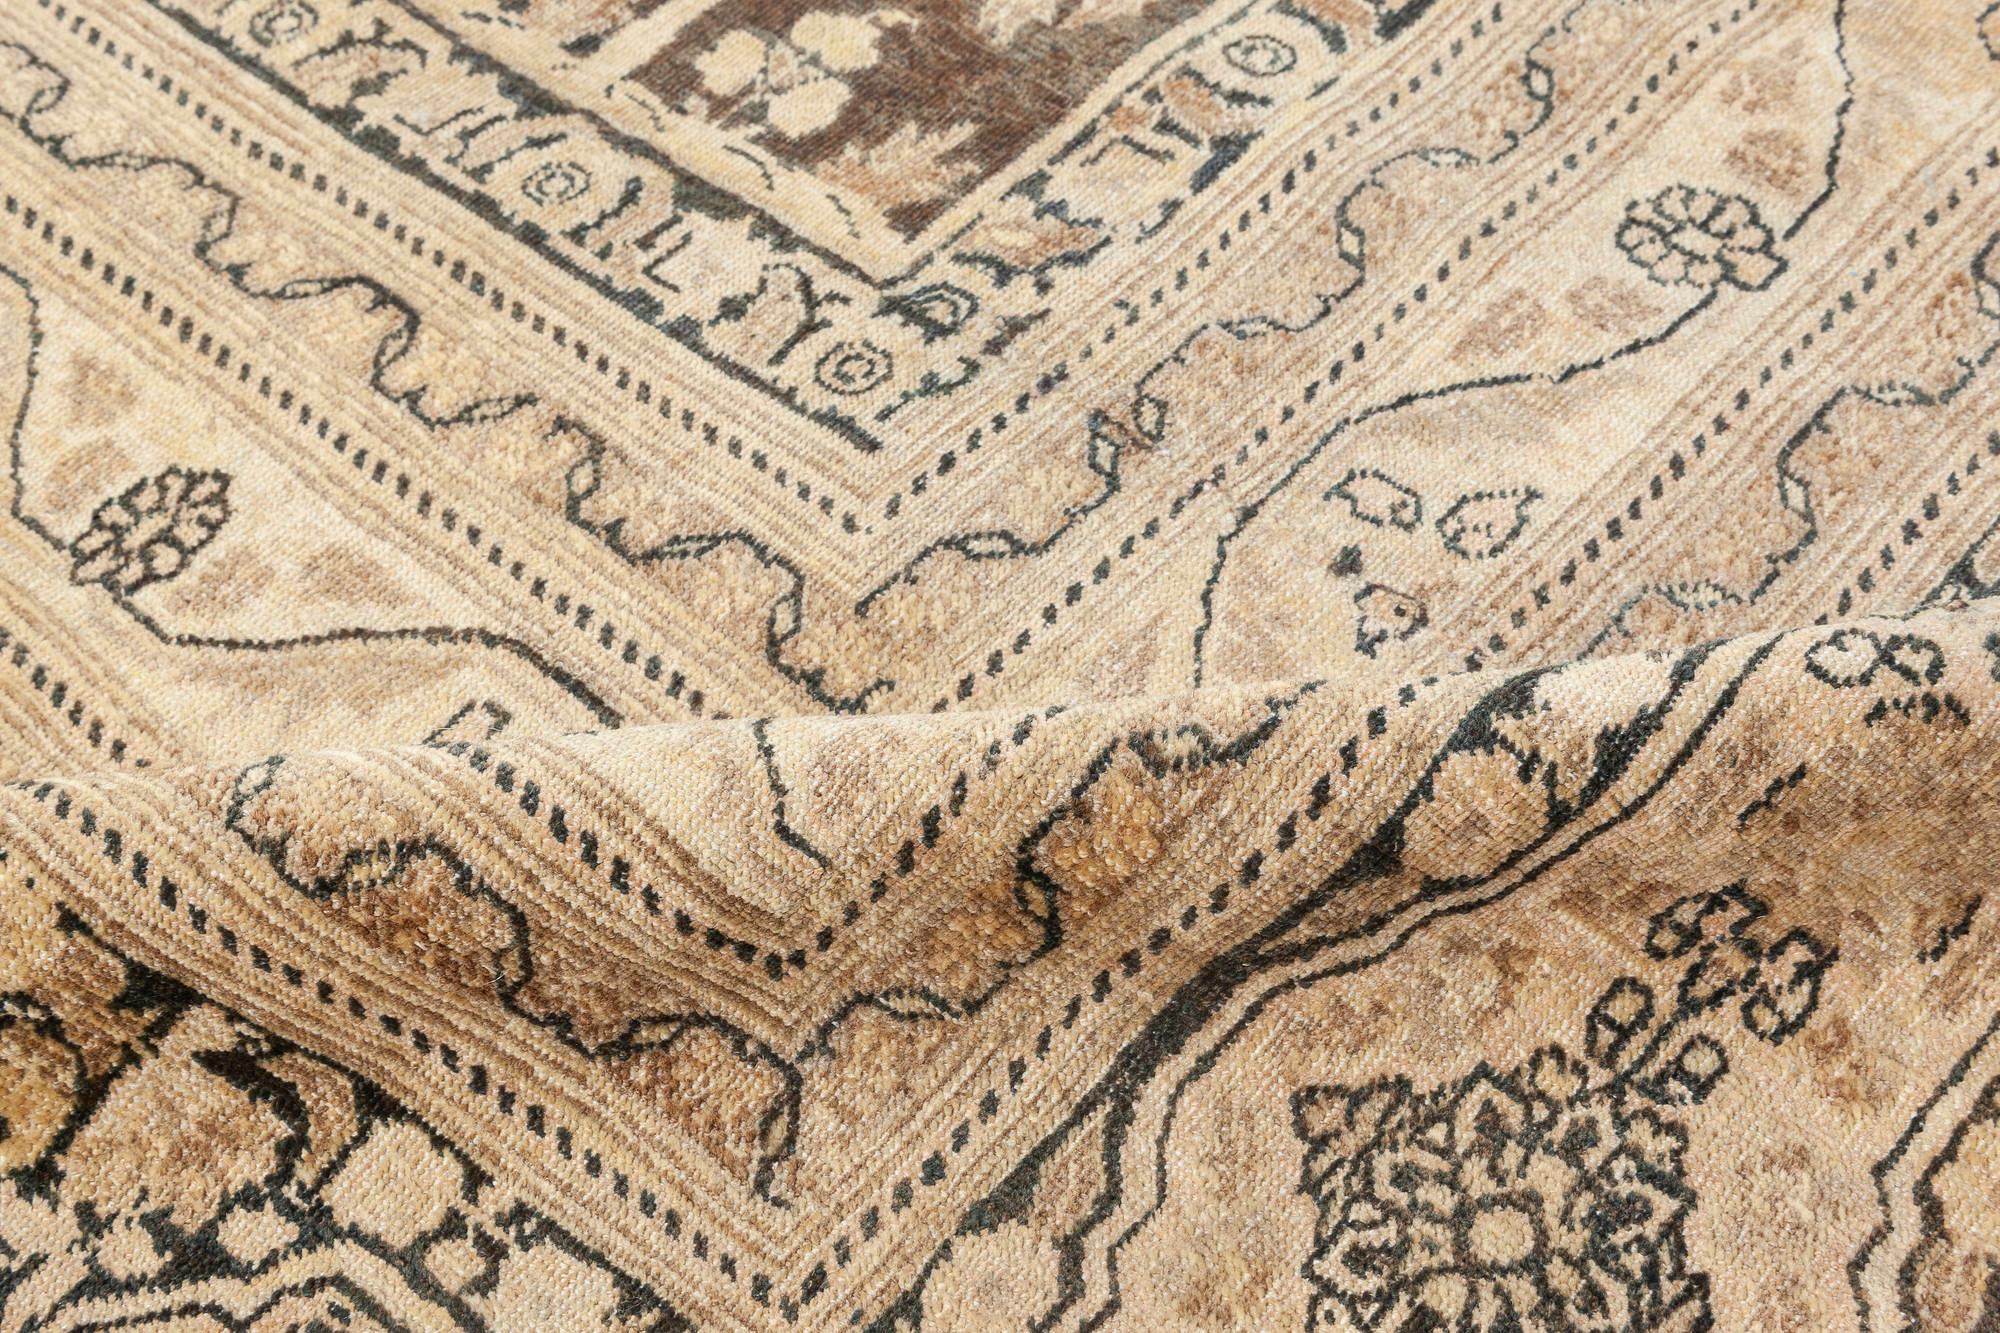 Authentic Persian Tabriz botanic handmade wool rug (size adjusted)
Size: 12'4